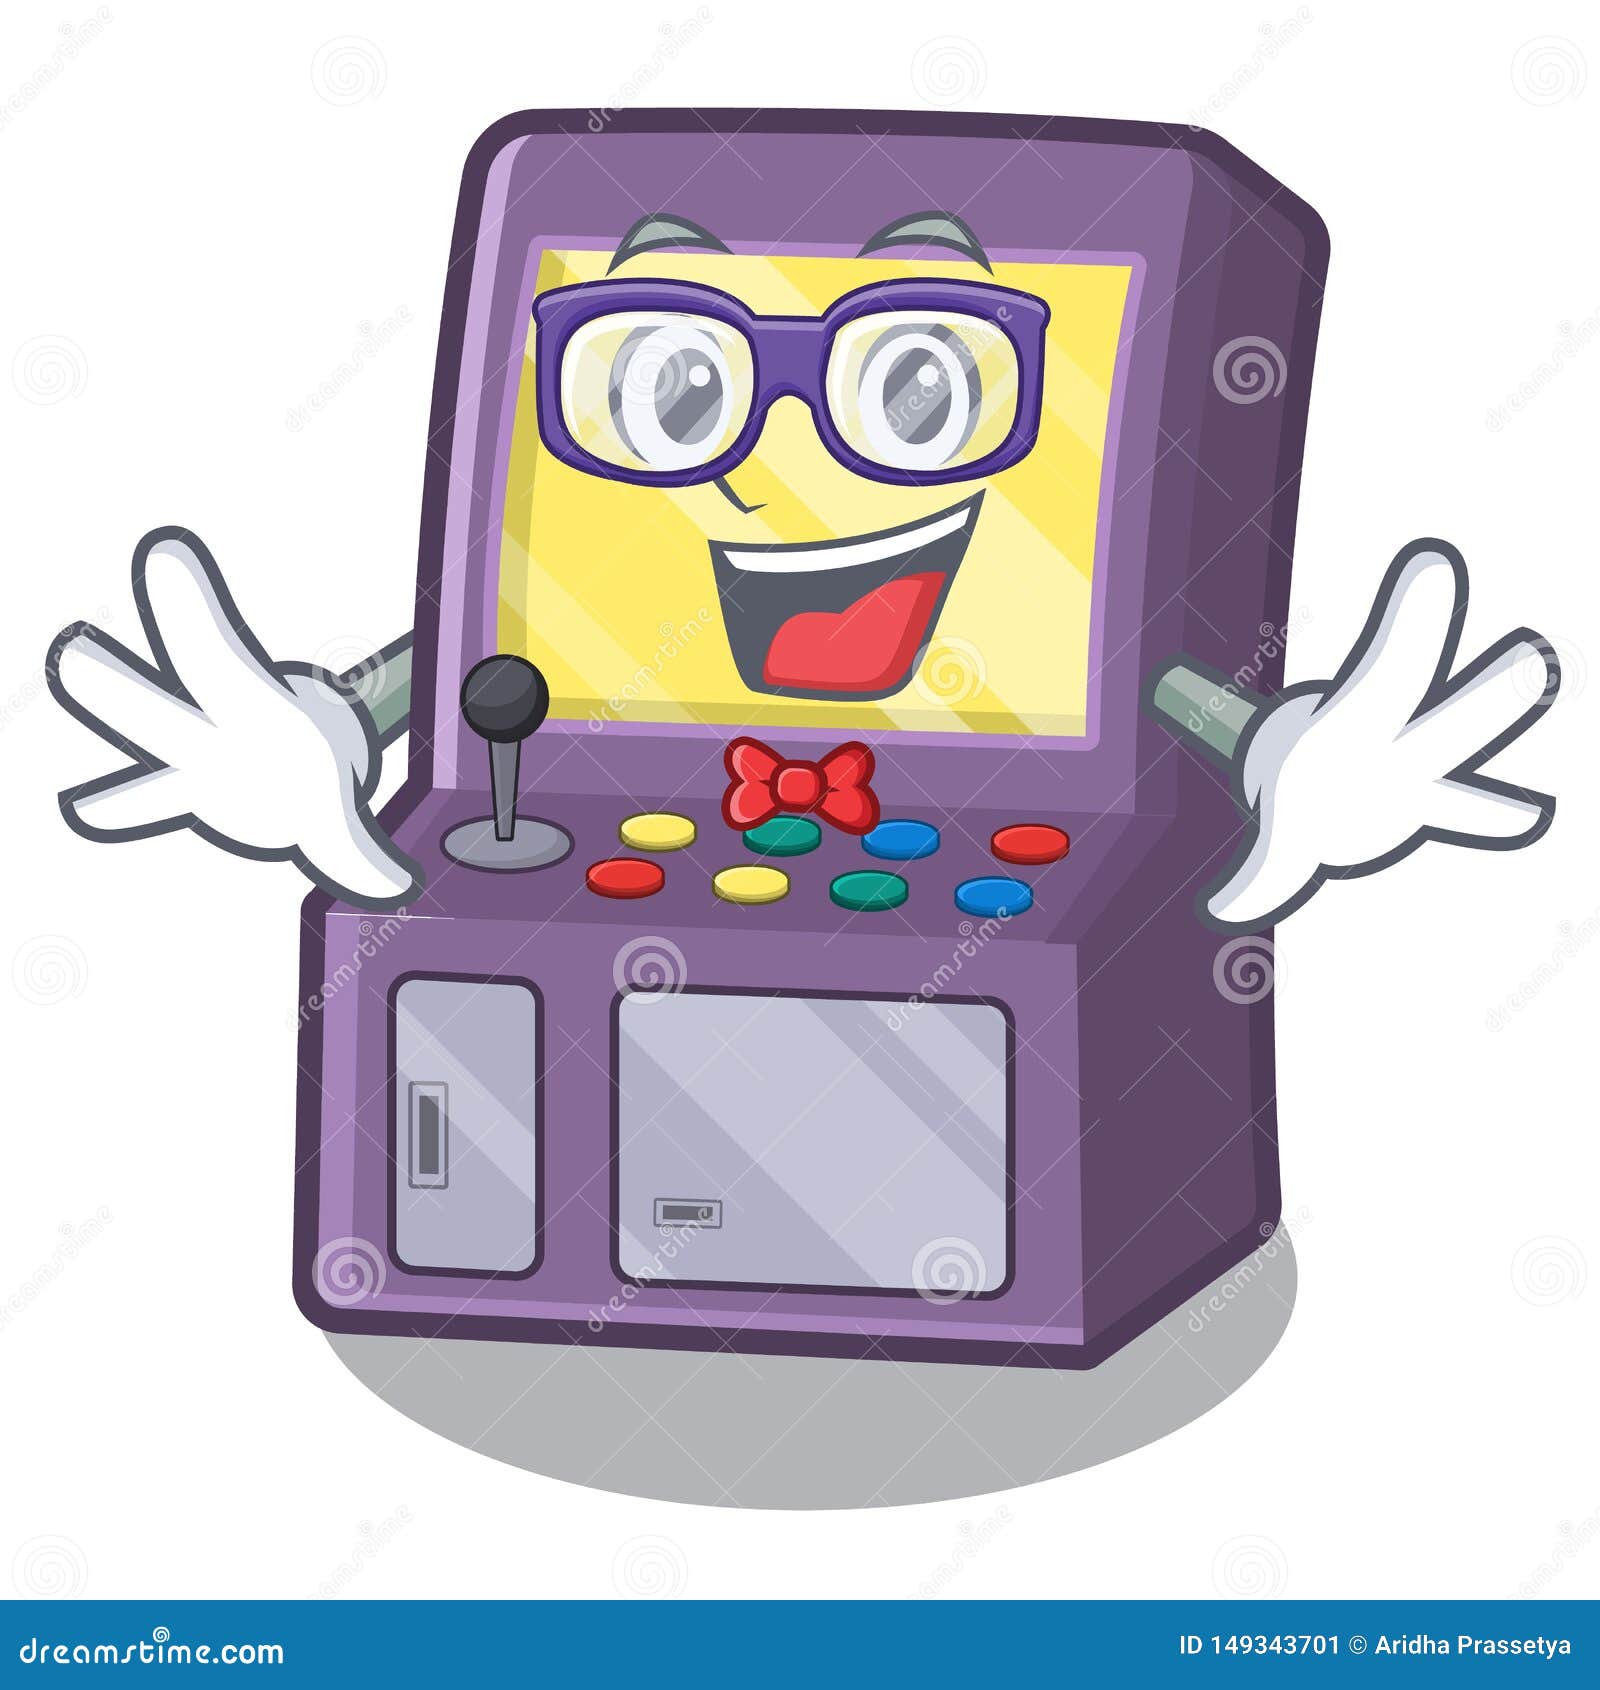 Geek Toy Arcade Machine in Cartoon Drawer Stock Vector - Illustration ...